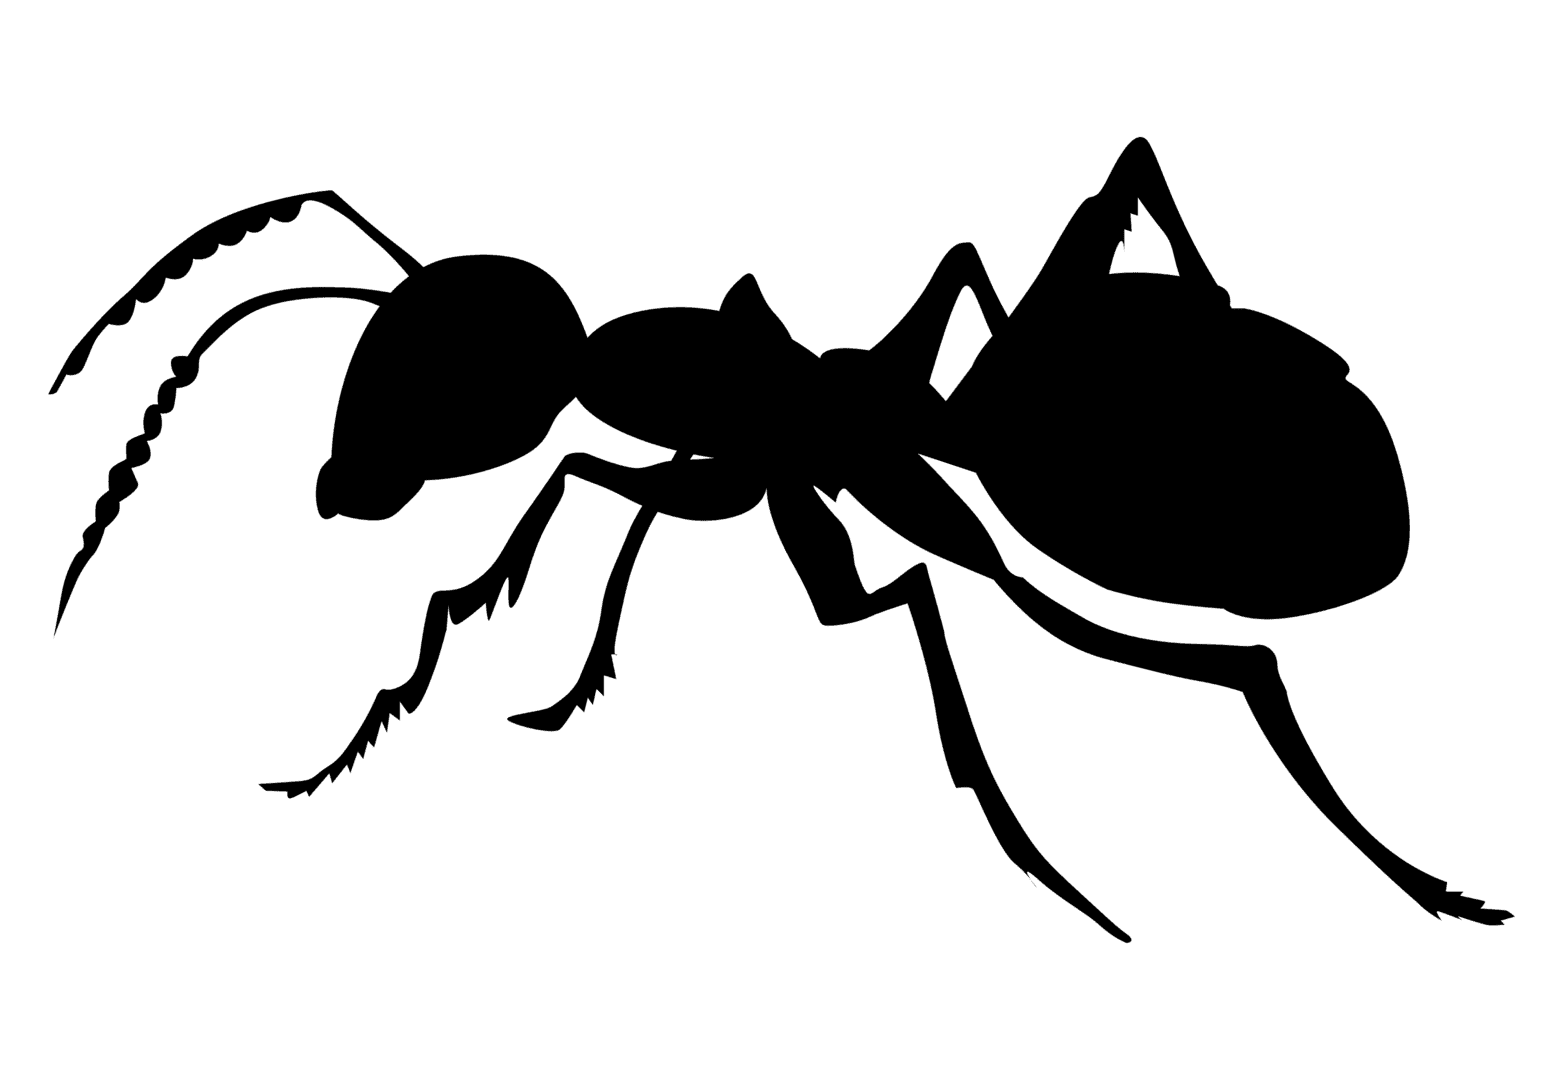 Ant treatment in Massillon, Canton, Stark County